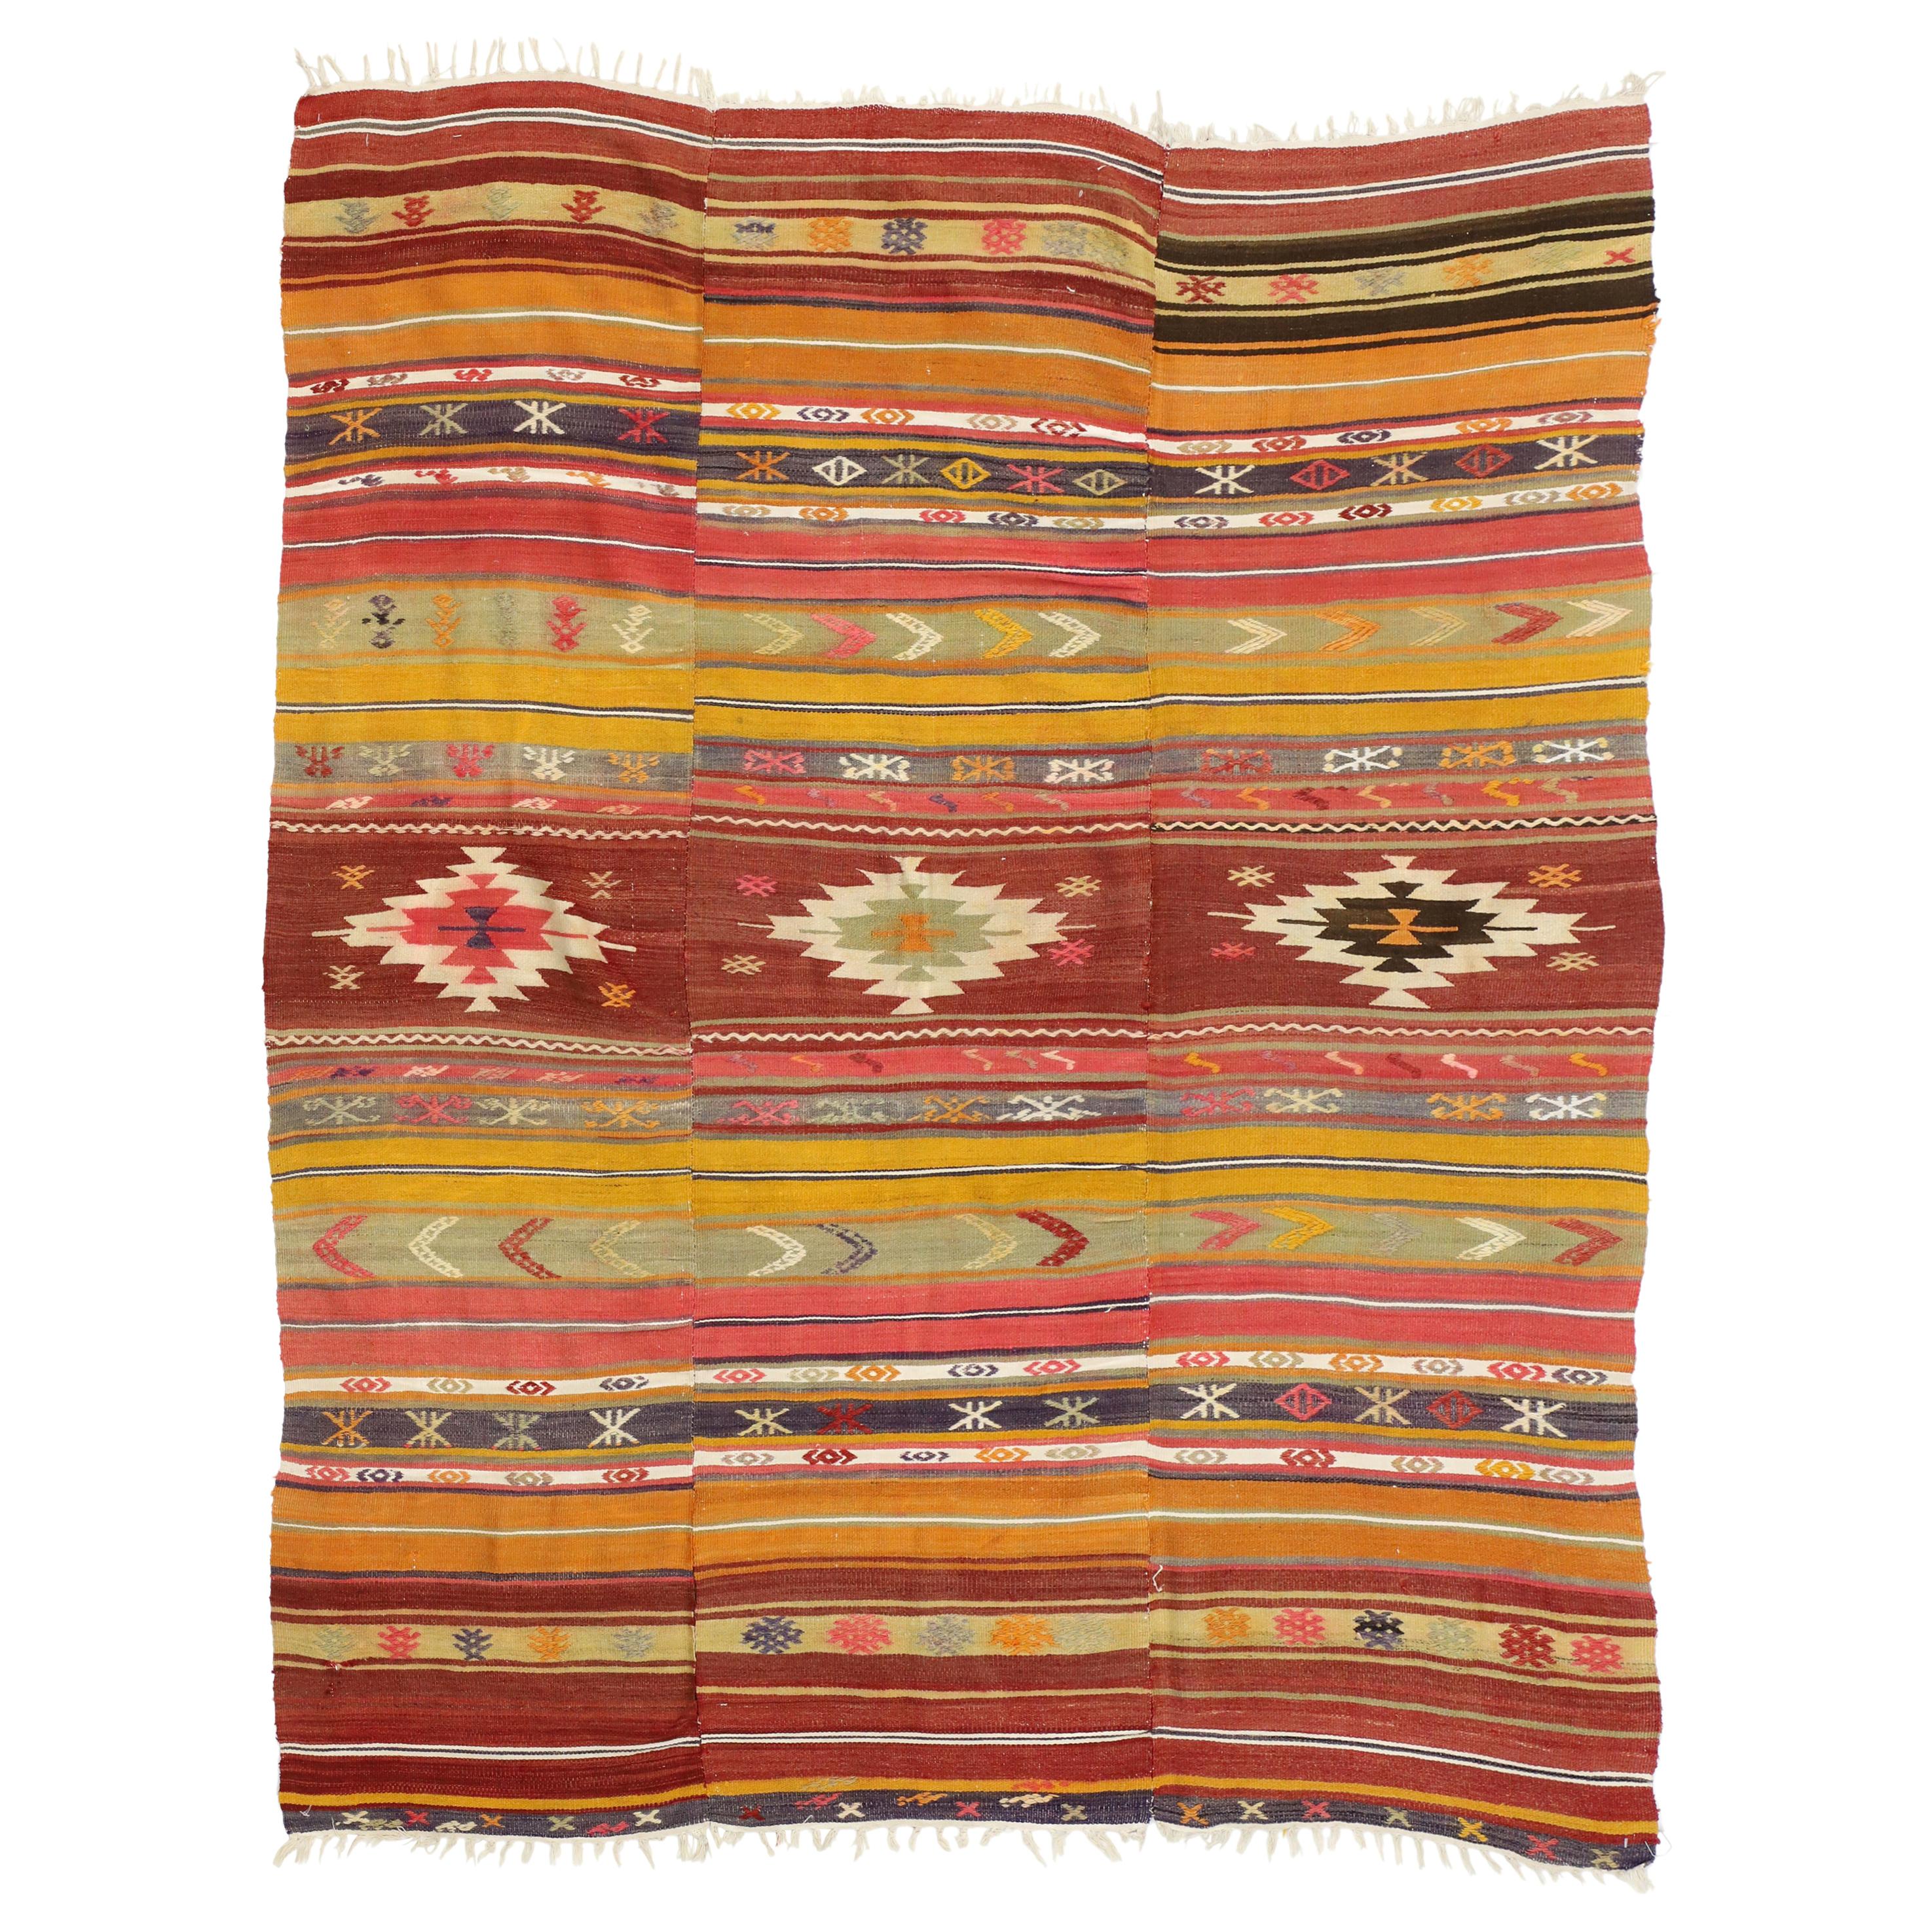 Vintage Turkish Kilim Flat-Weave Rug with Boho Chic Southwestern Style